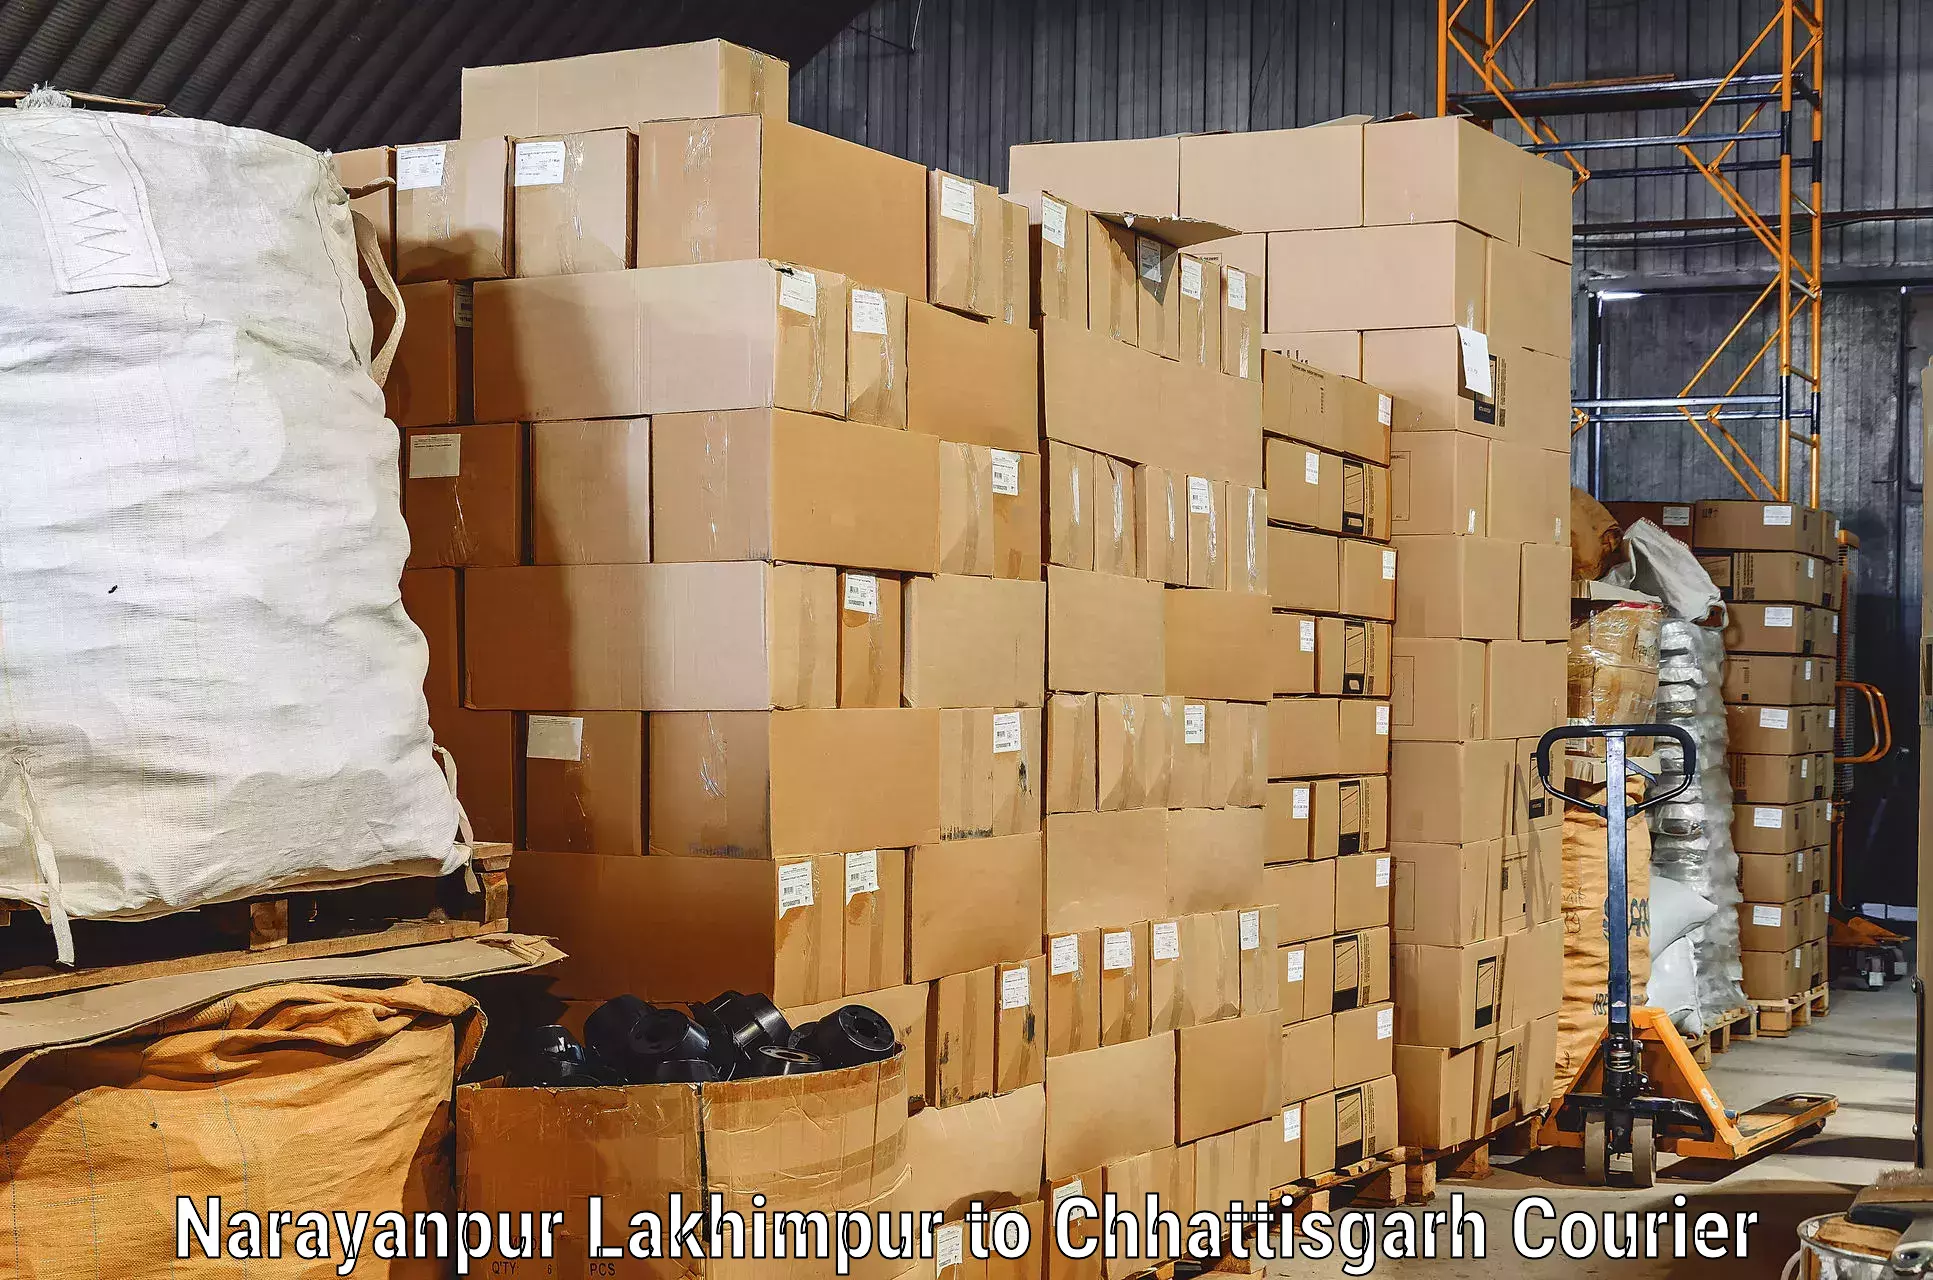 Seamless moving process Narayanpur Lakhimpur to Wadrafnagar